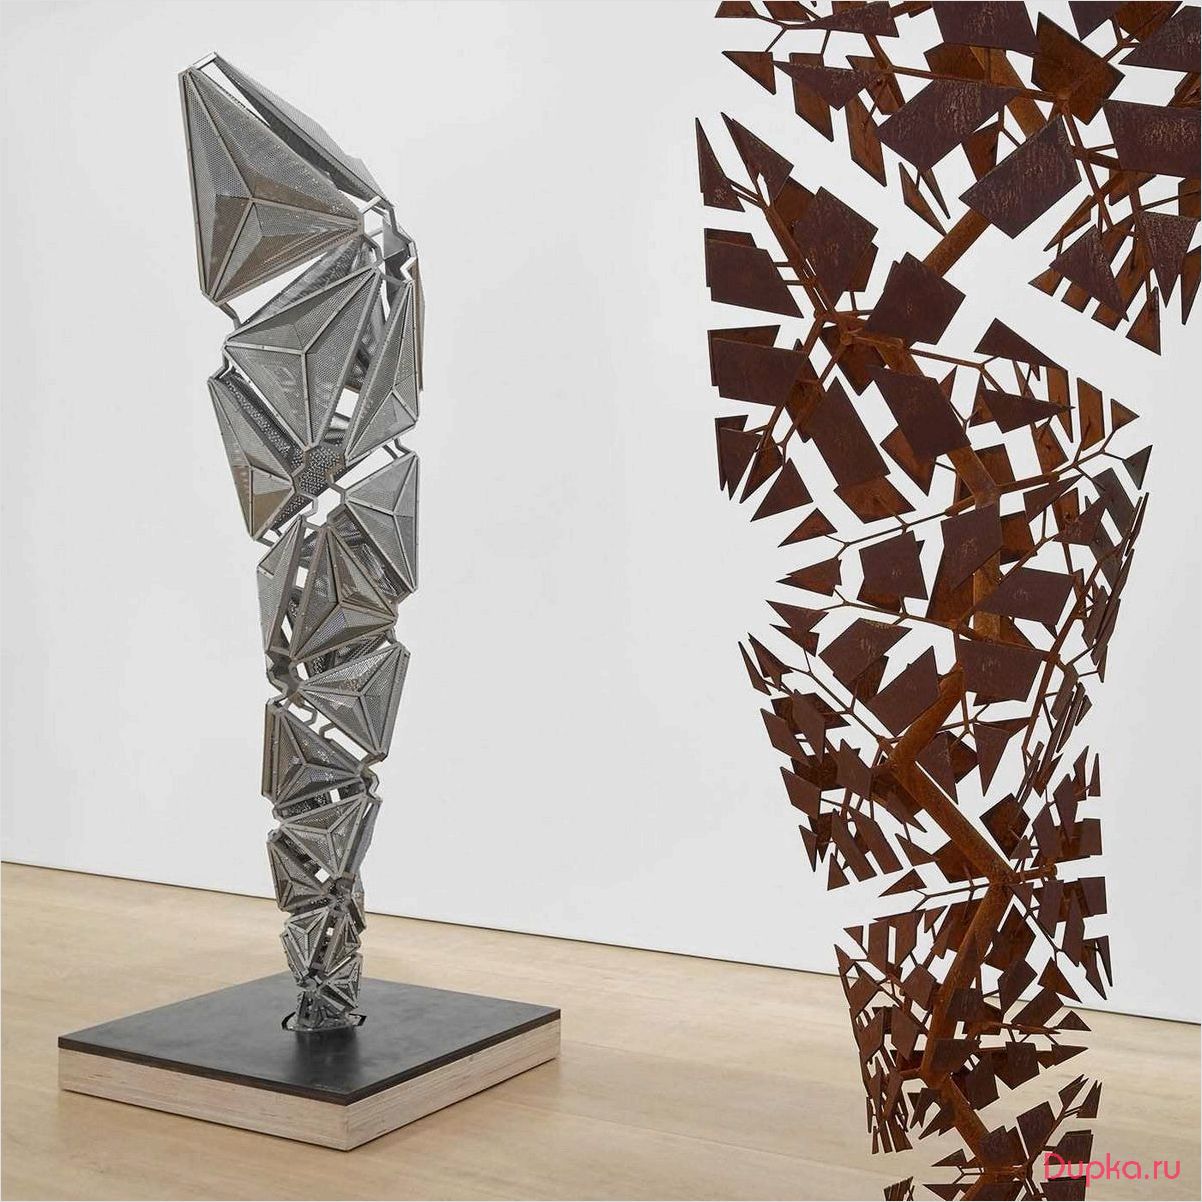 Современная абстрактная скульптура — искусство, которое заставляет задуматься и ощутить новые эмоции